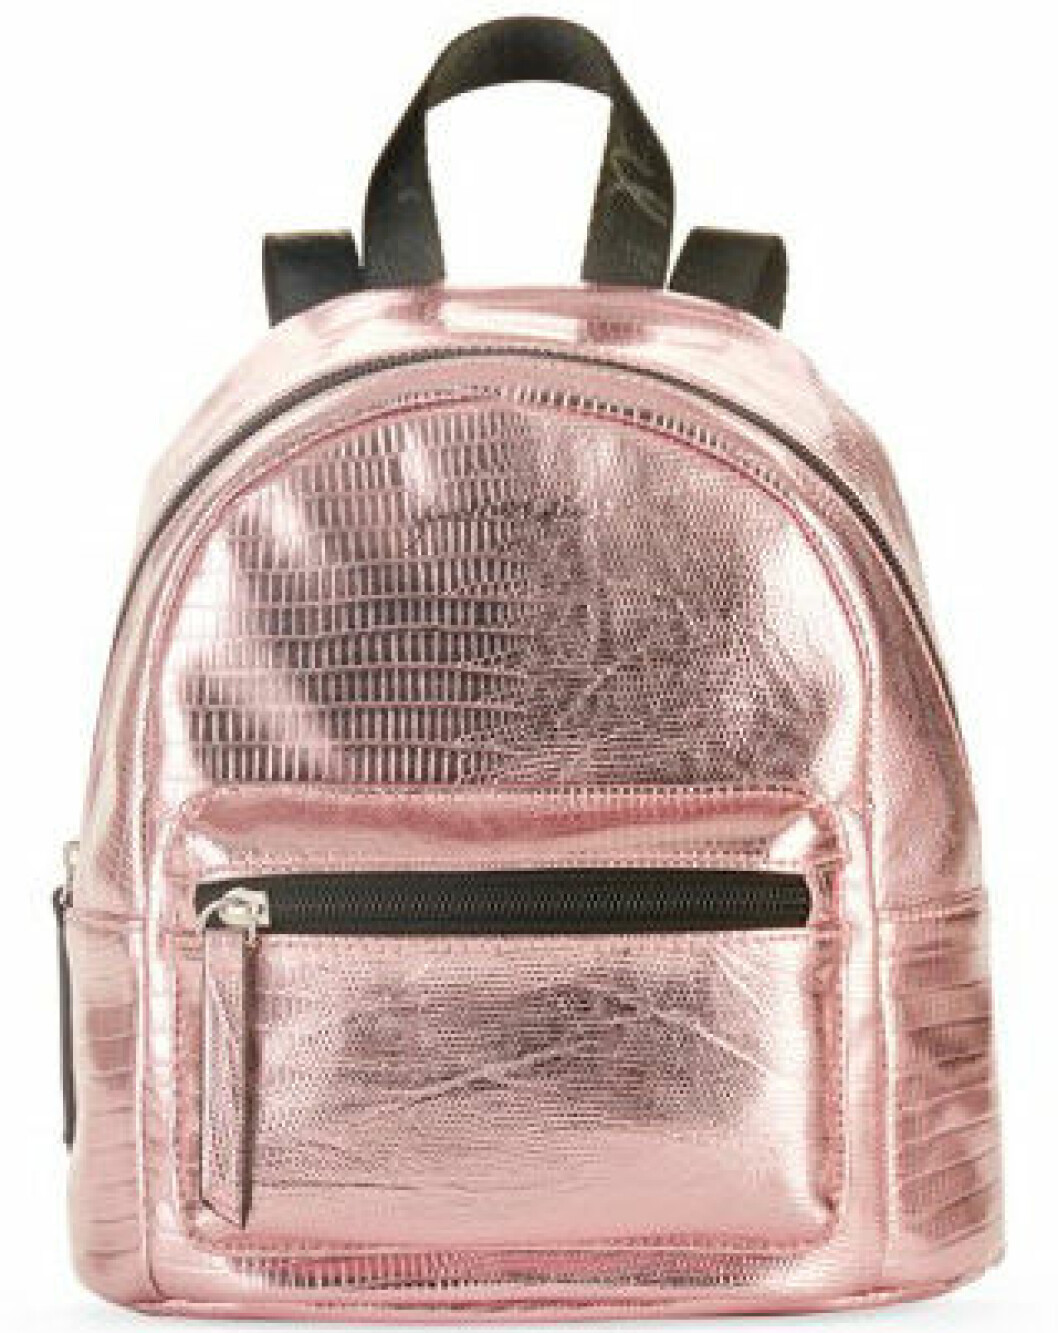 En bild på en ryggsäck i rosa metallic från Kendall och Kylie Jenners väskkollektion för Walmart.